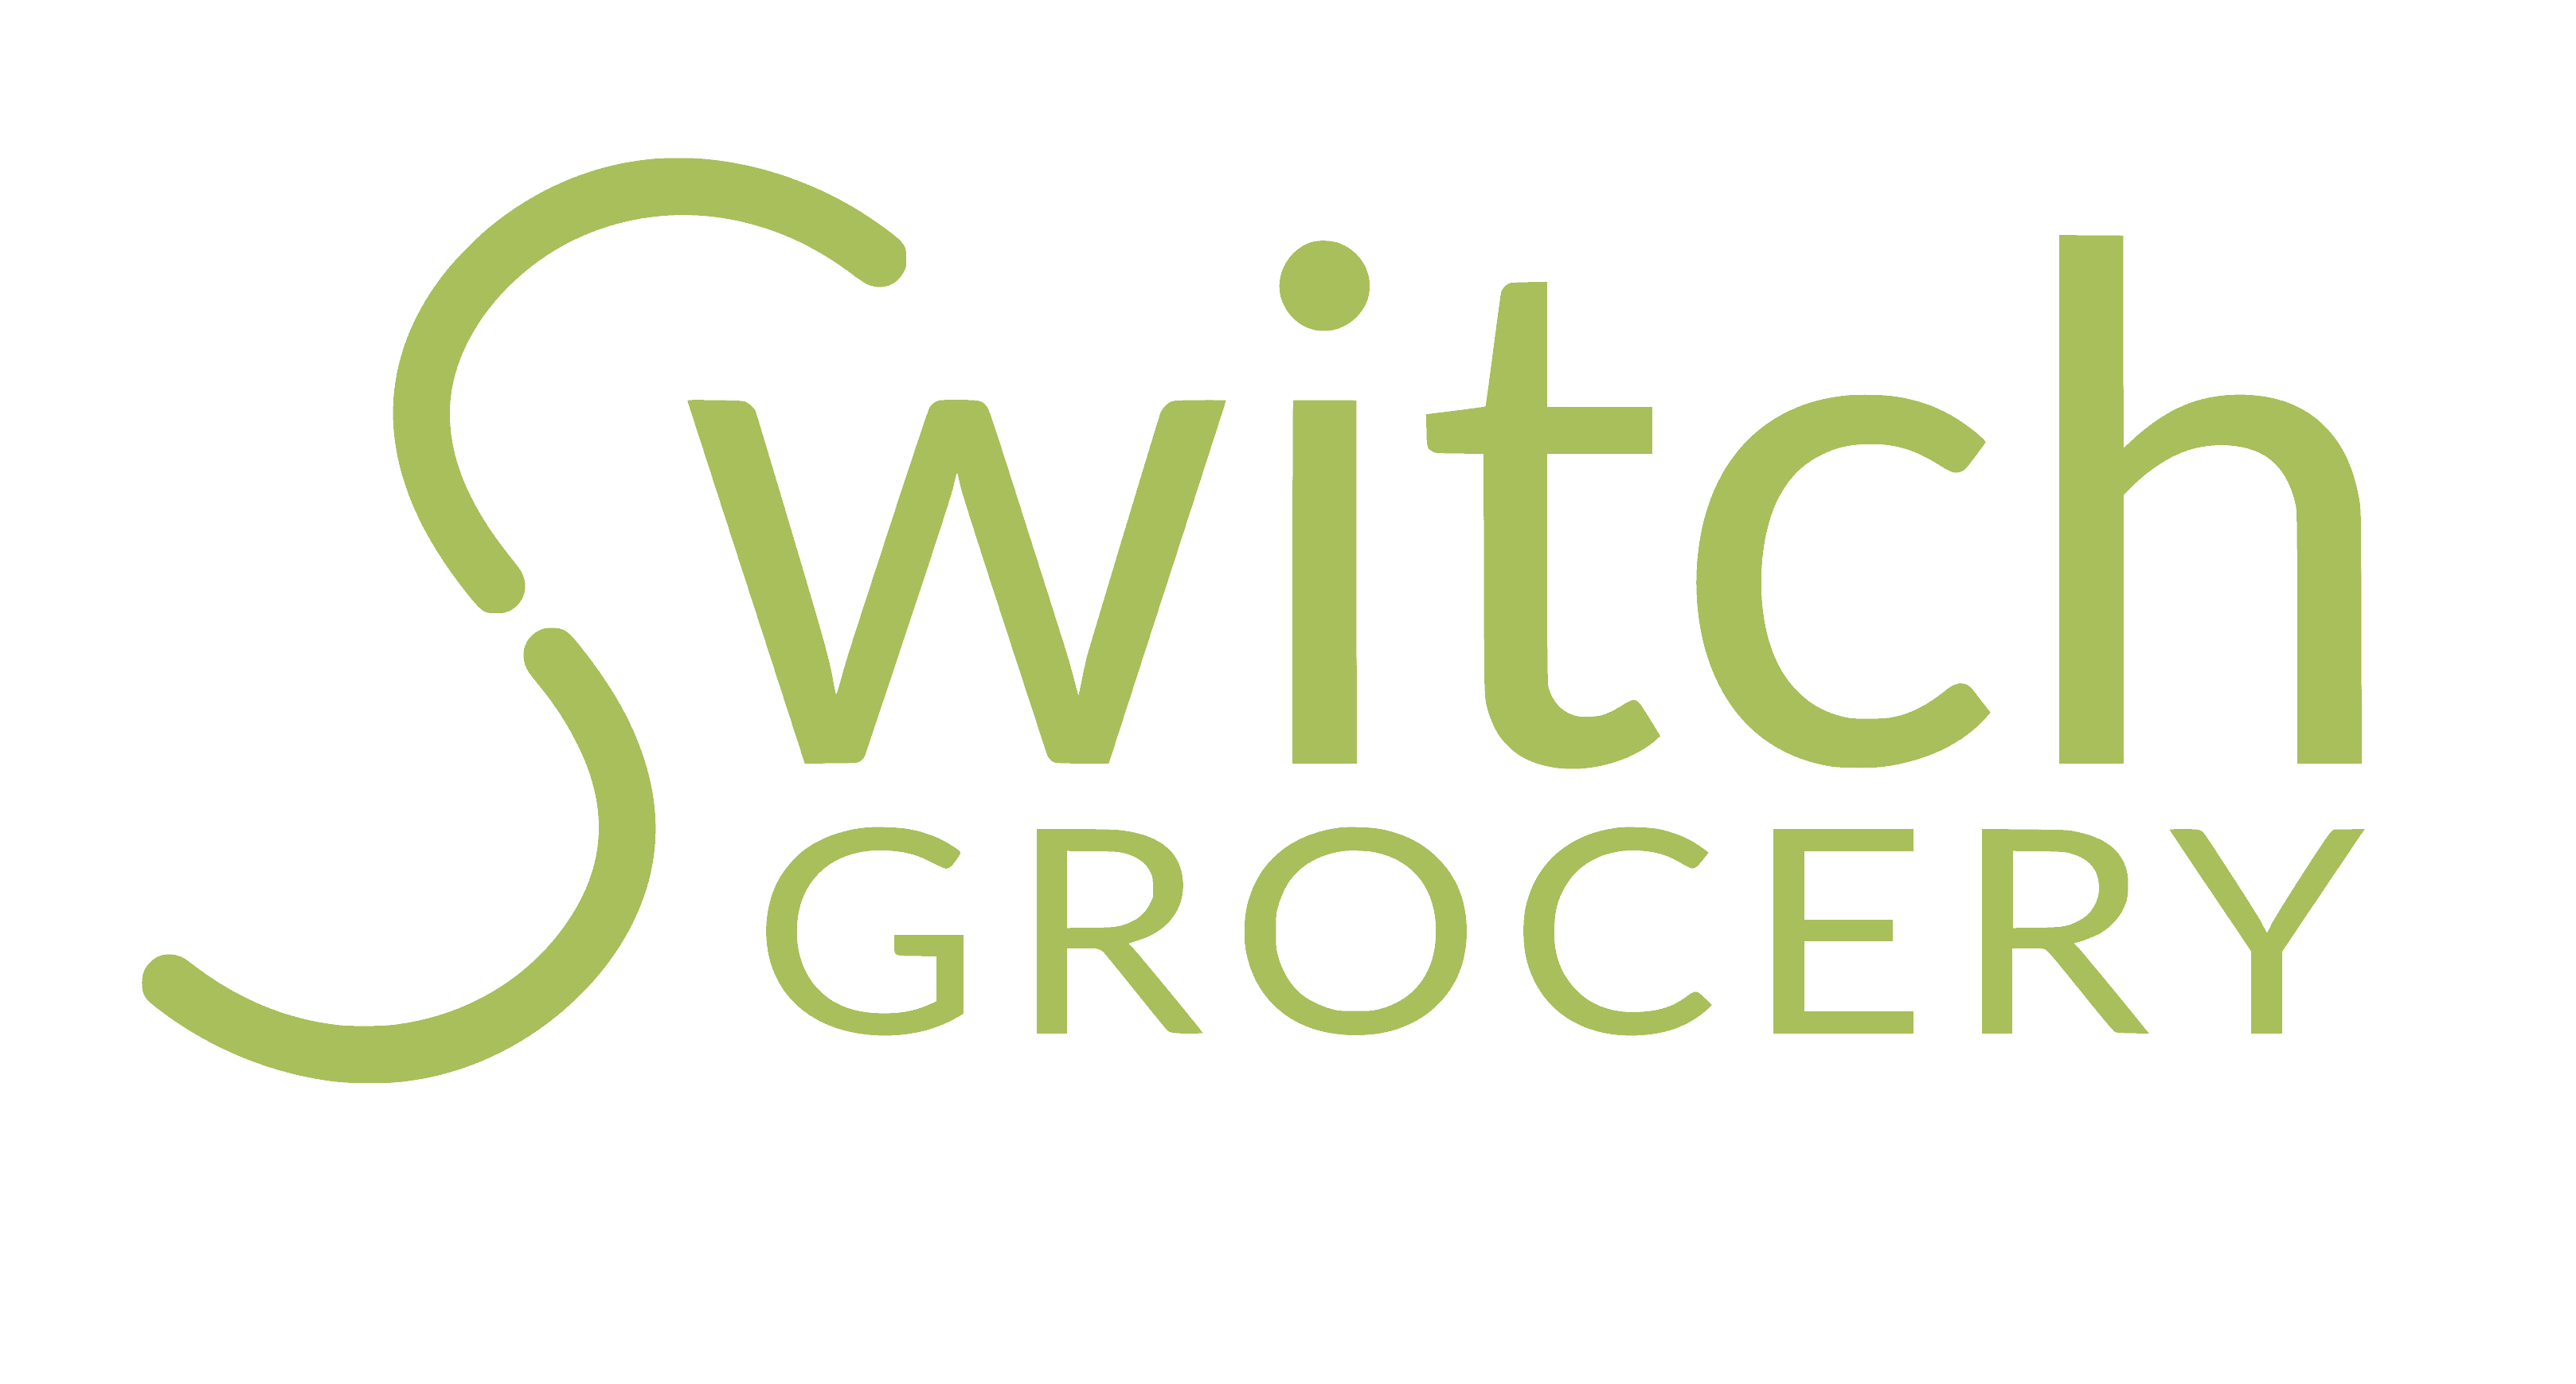 Switch Grocery logo